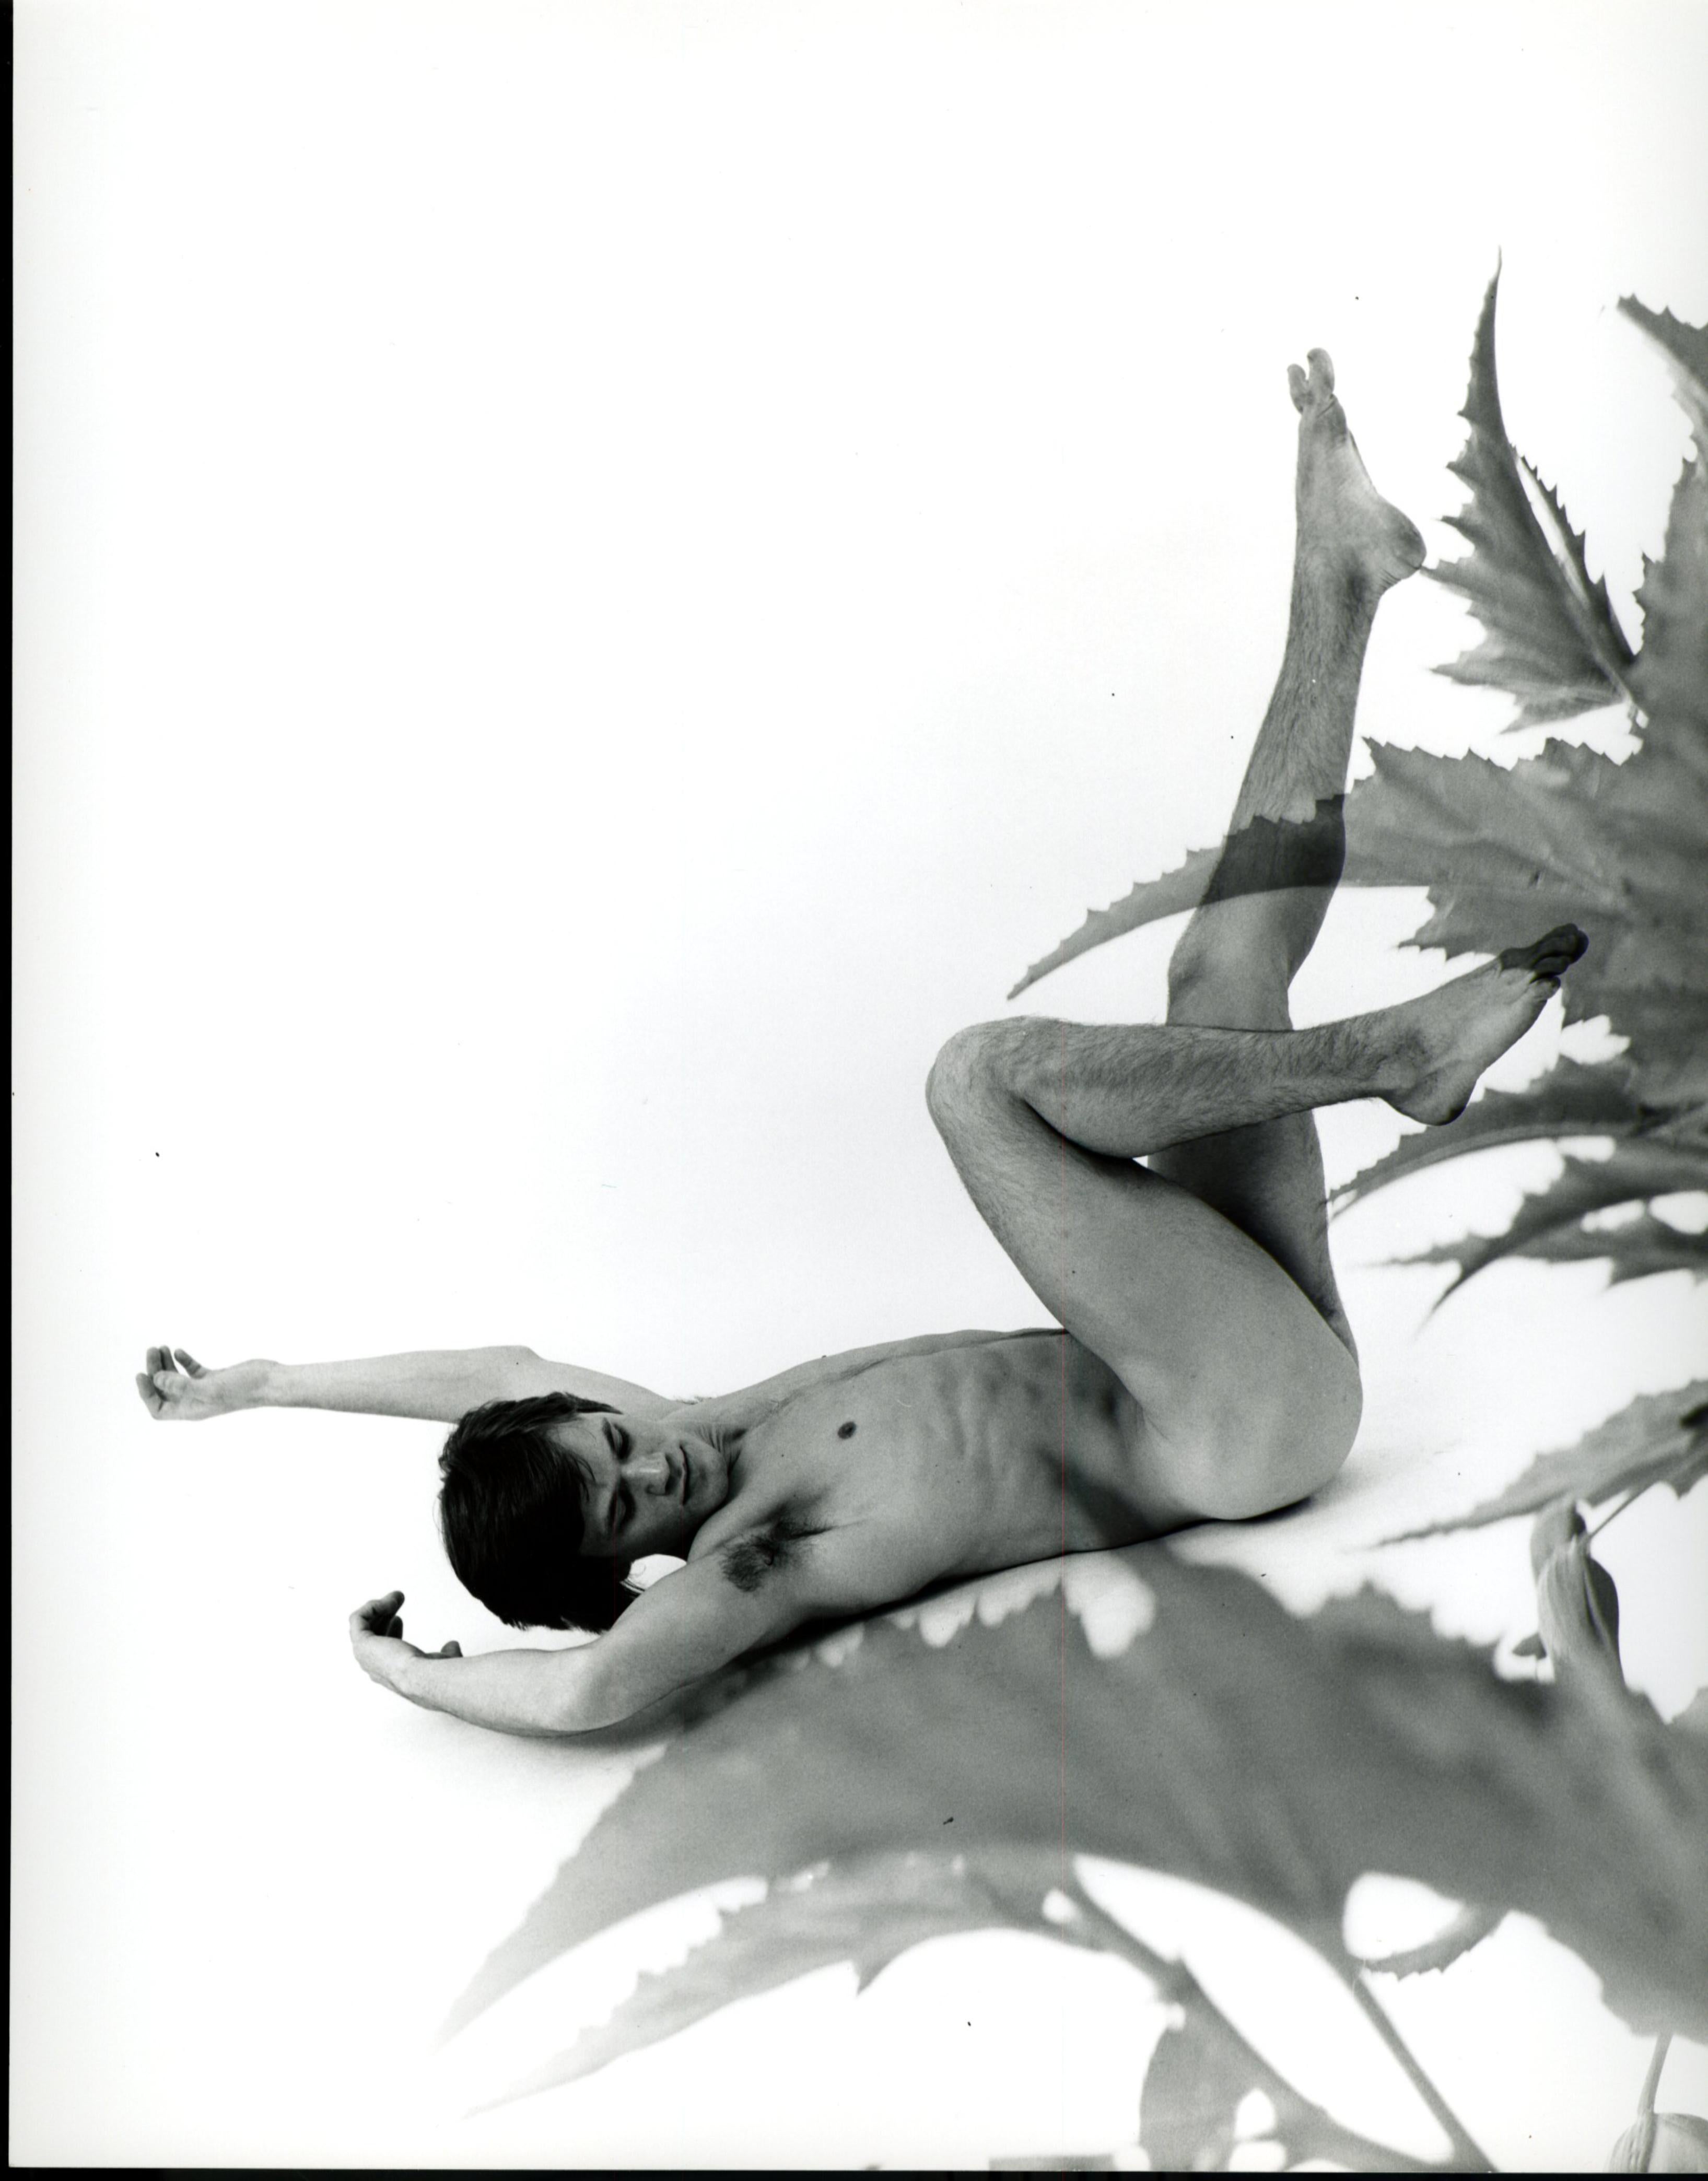 Jack Mitchell Black and White Photograph – Männliches Modell in Hautfarbe mit mehreren Belichtungen und Pflanzenblättern